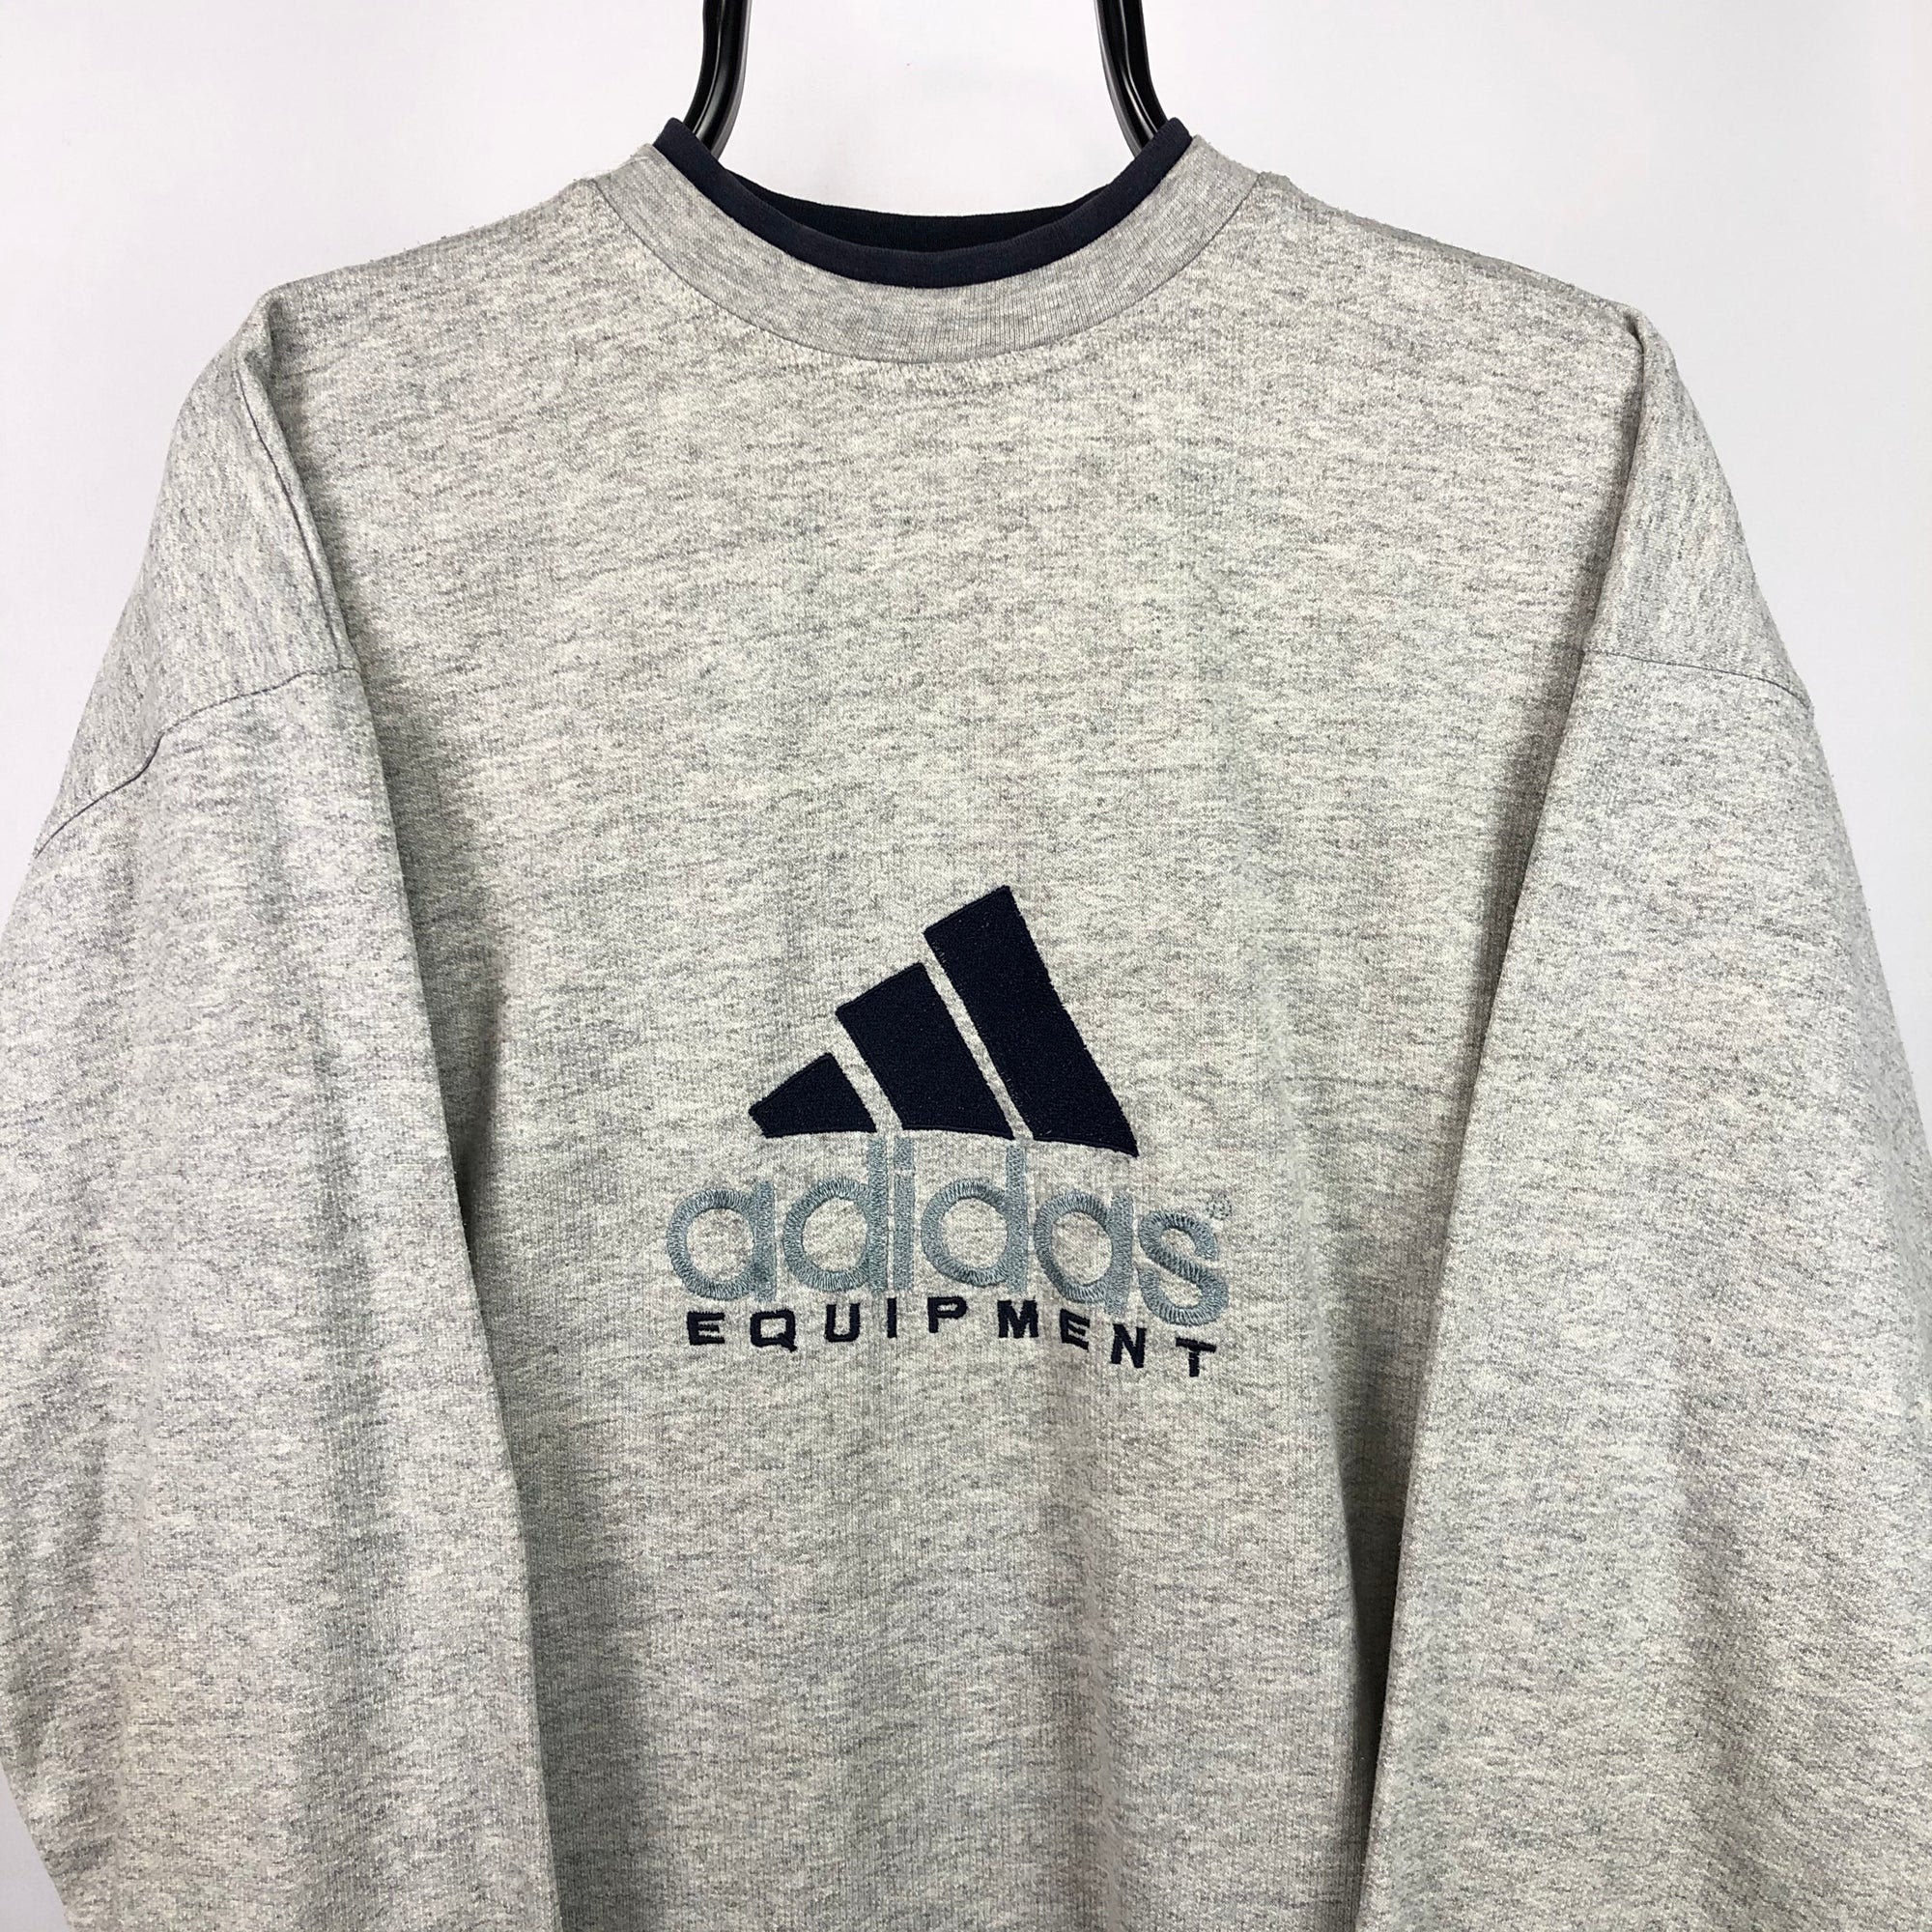 Vintage 90s Adidas Equipment Sweatshirt in Grey/Navy - Men's Large/Women's XL